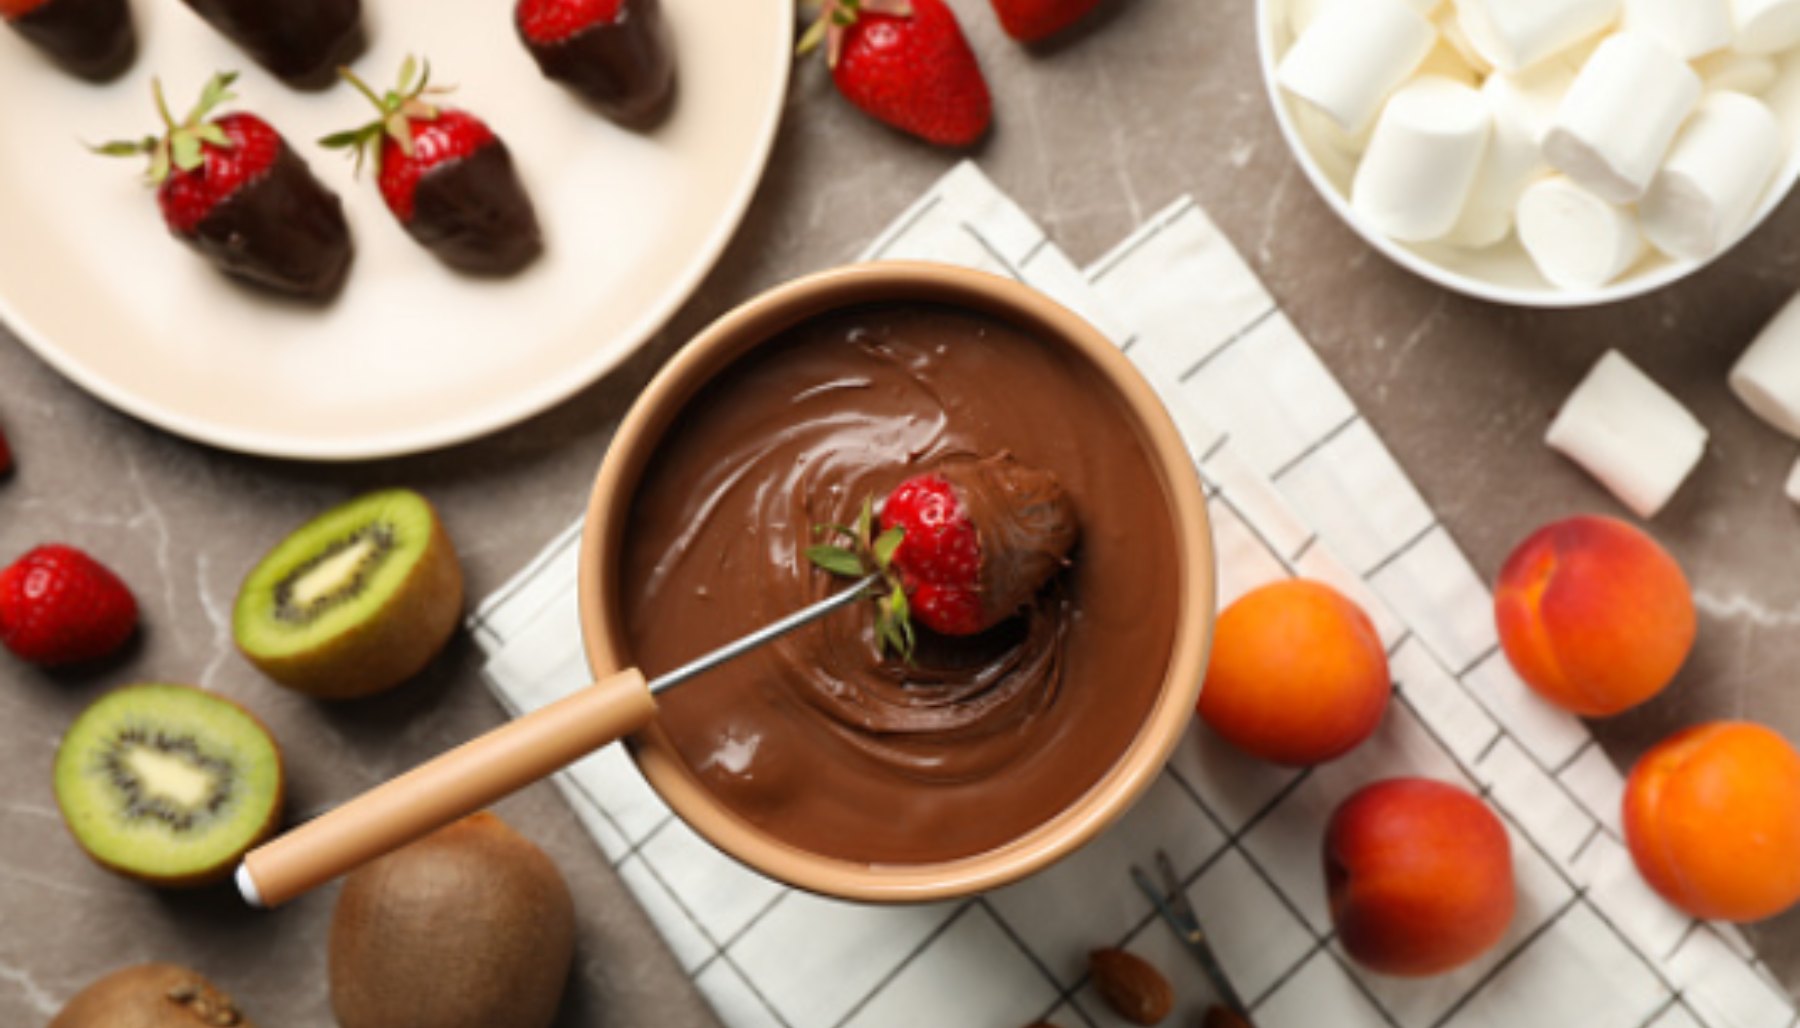 Fondue de chocolate: Receta, frutas y hacerla con niños